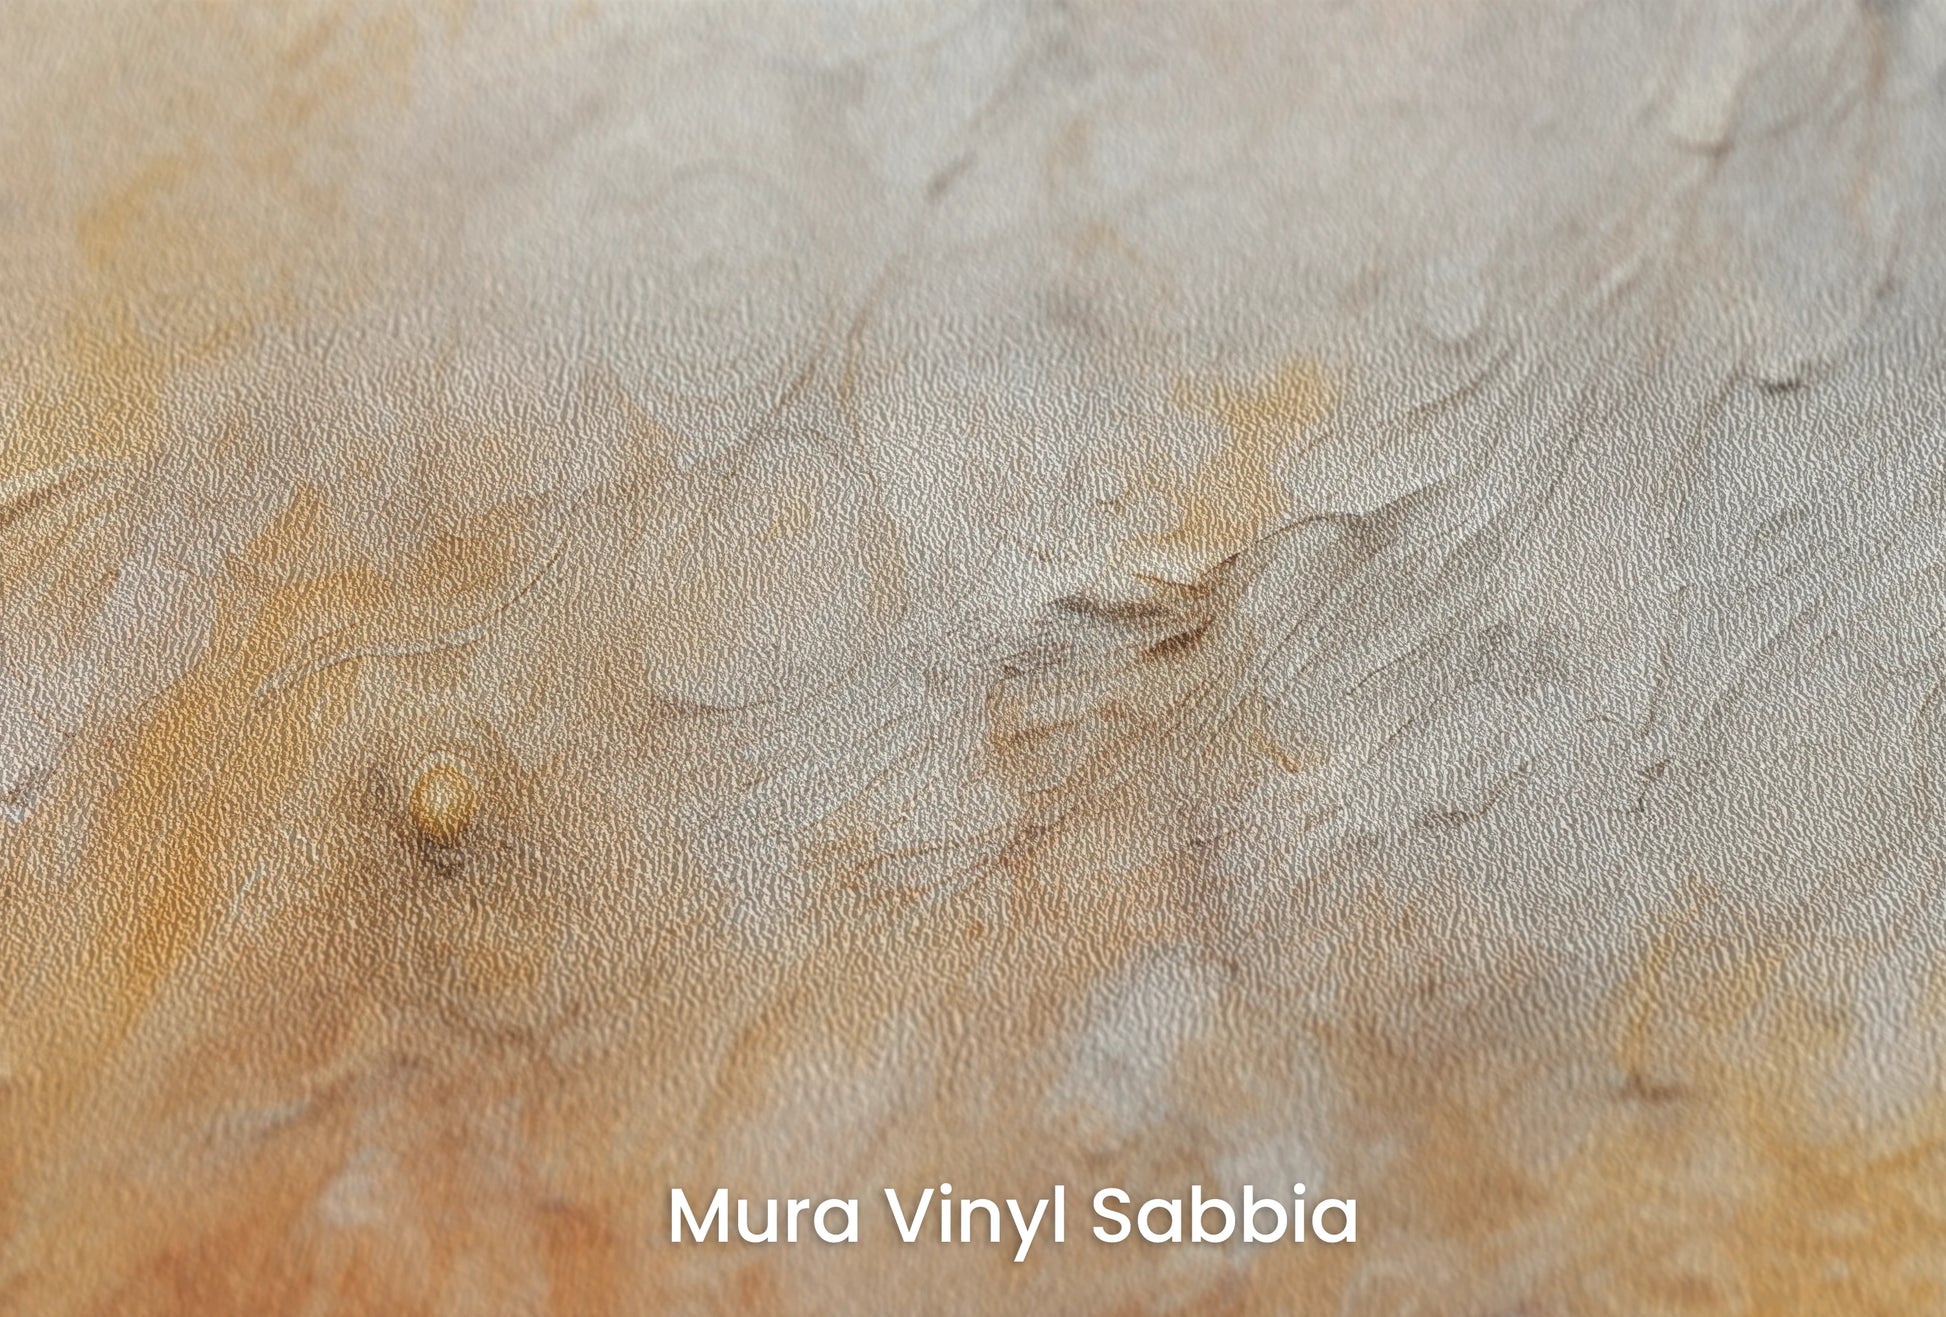 Zbliżenie na artystyczną fototapetę o nazwie Lunar Eclipse na podłożu Mura Vinyl Sabbia struktura grubego ziarna piasku.